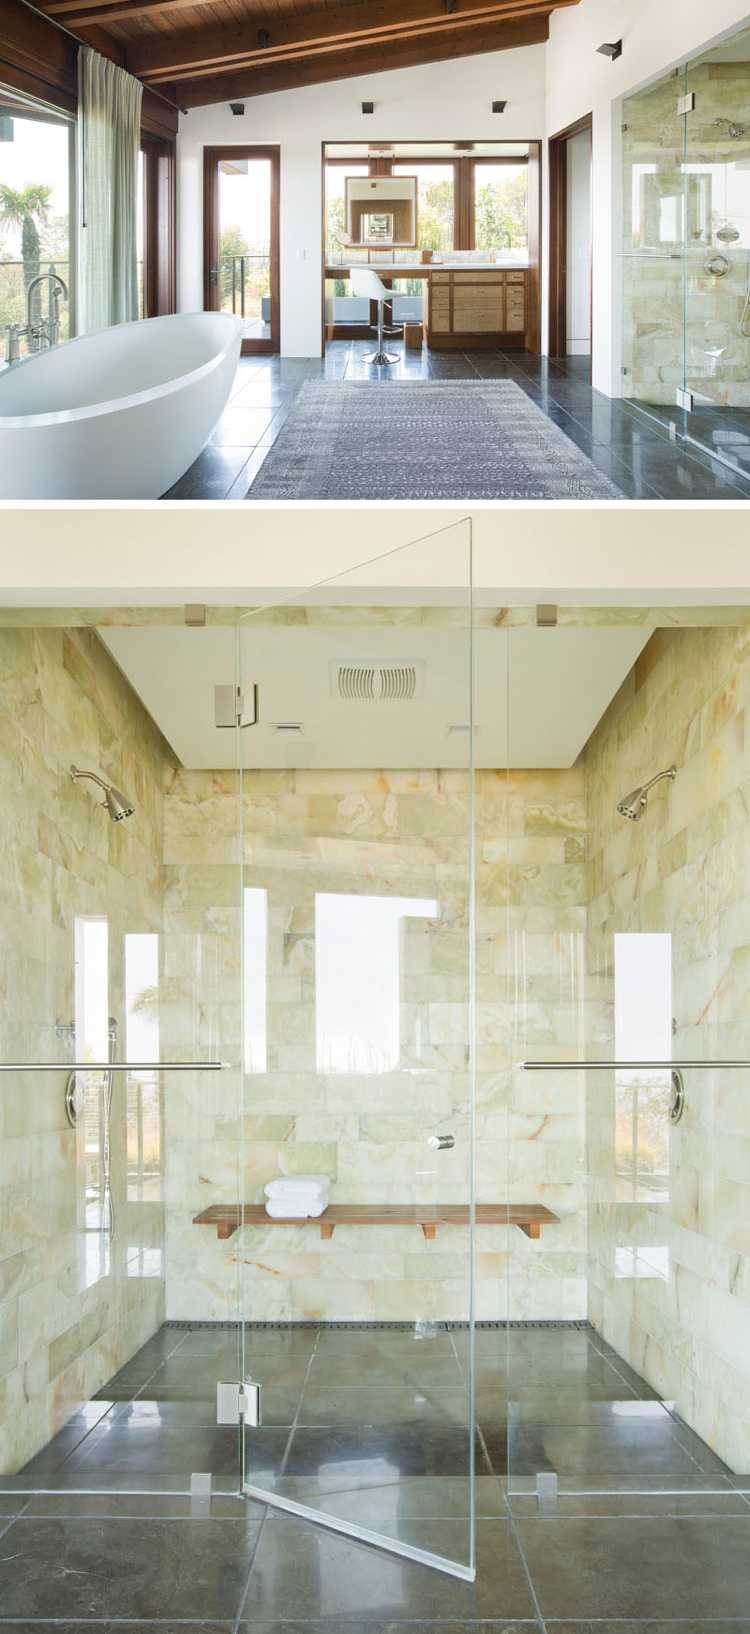 natursteinverkleidung innen badezimmer glaswand freistehende badewanne fenster